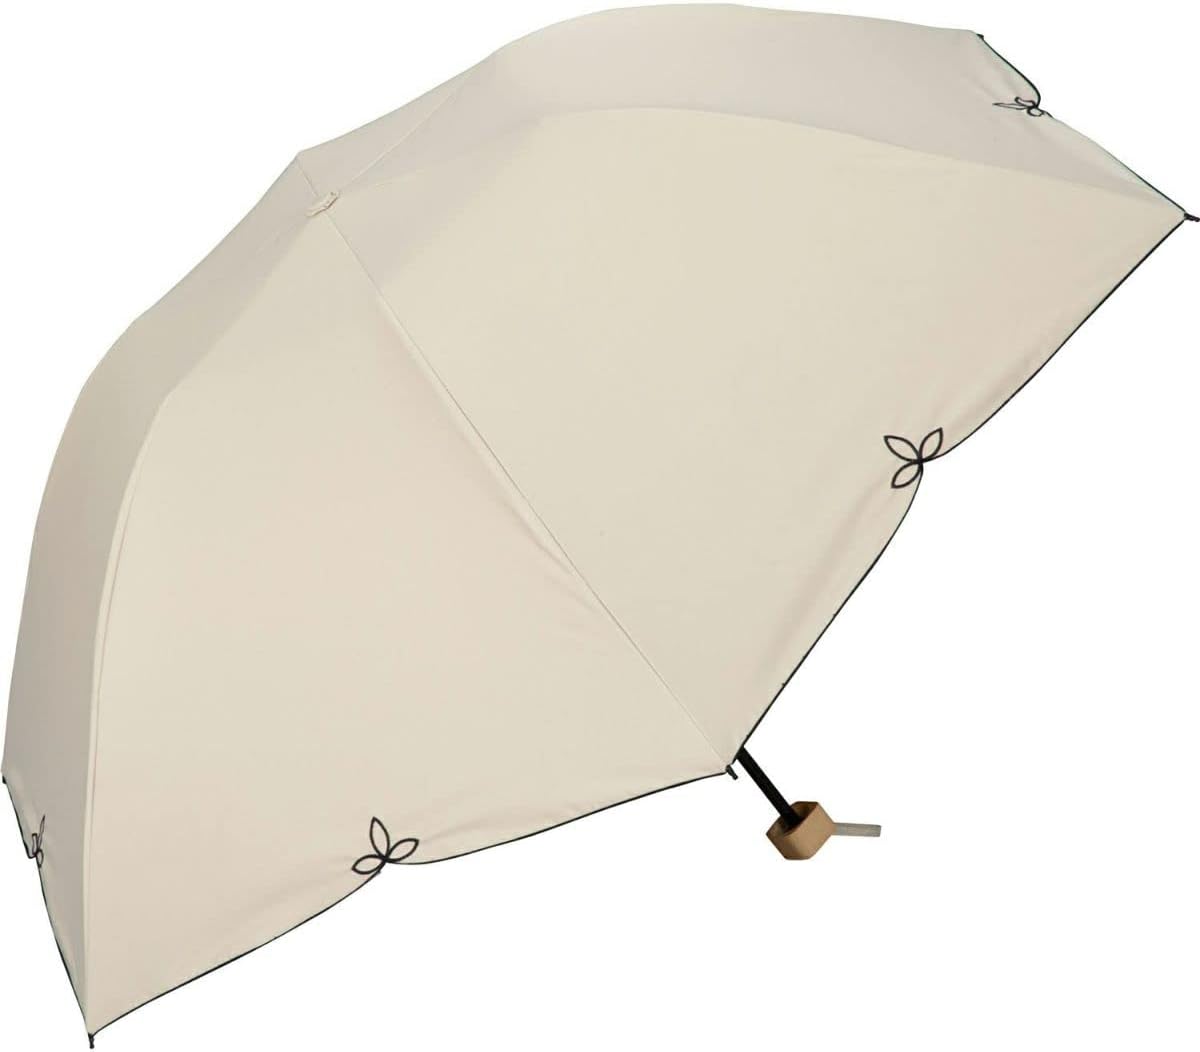 日本 Wpc. 完全遮光UV100%折傘/ Shading Dome Wide Scallop Beige